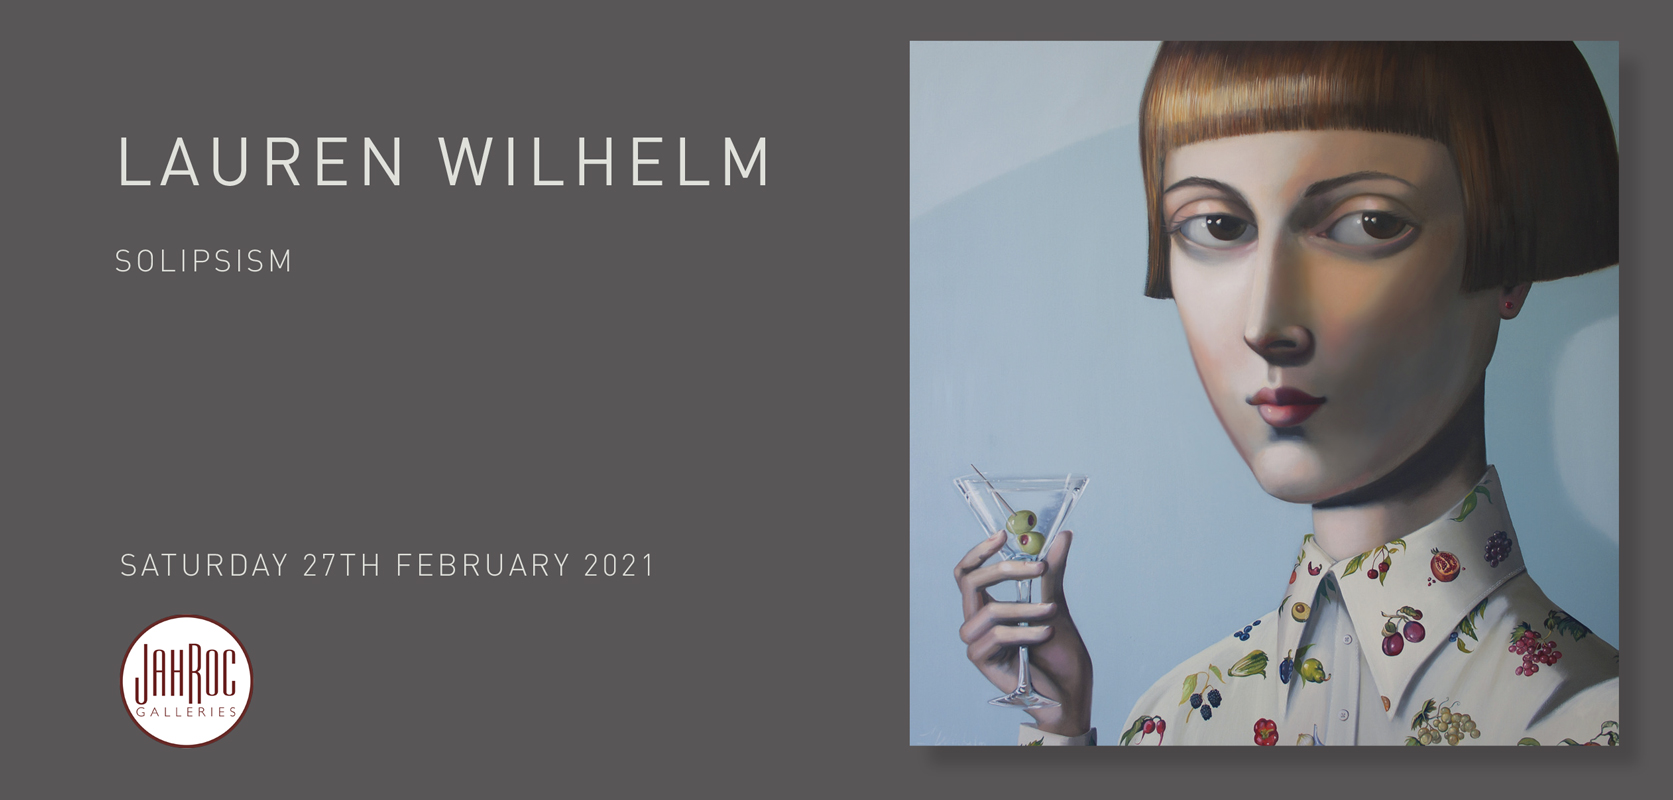 Lauren Wilhelm Solipsism Exhibition At Jahroc Galleries Front